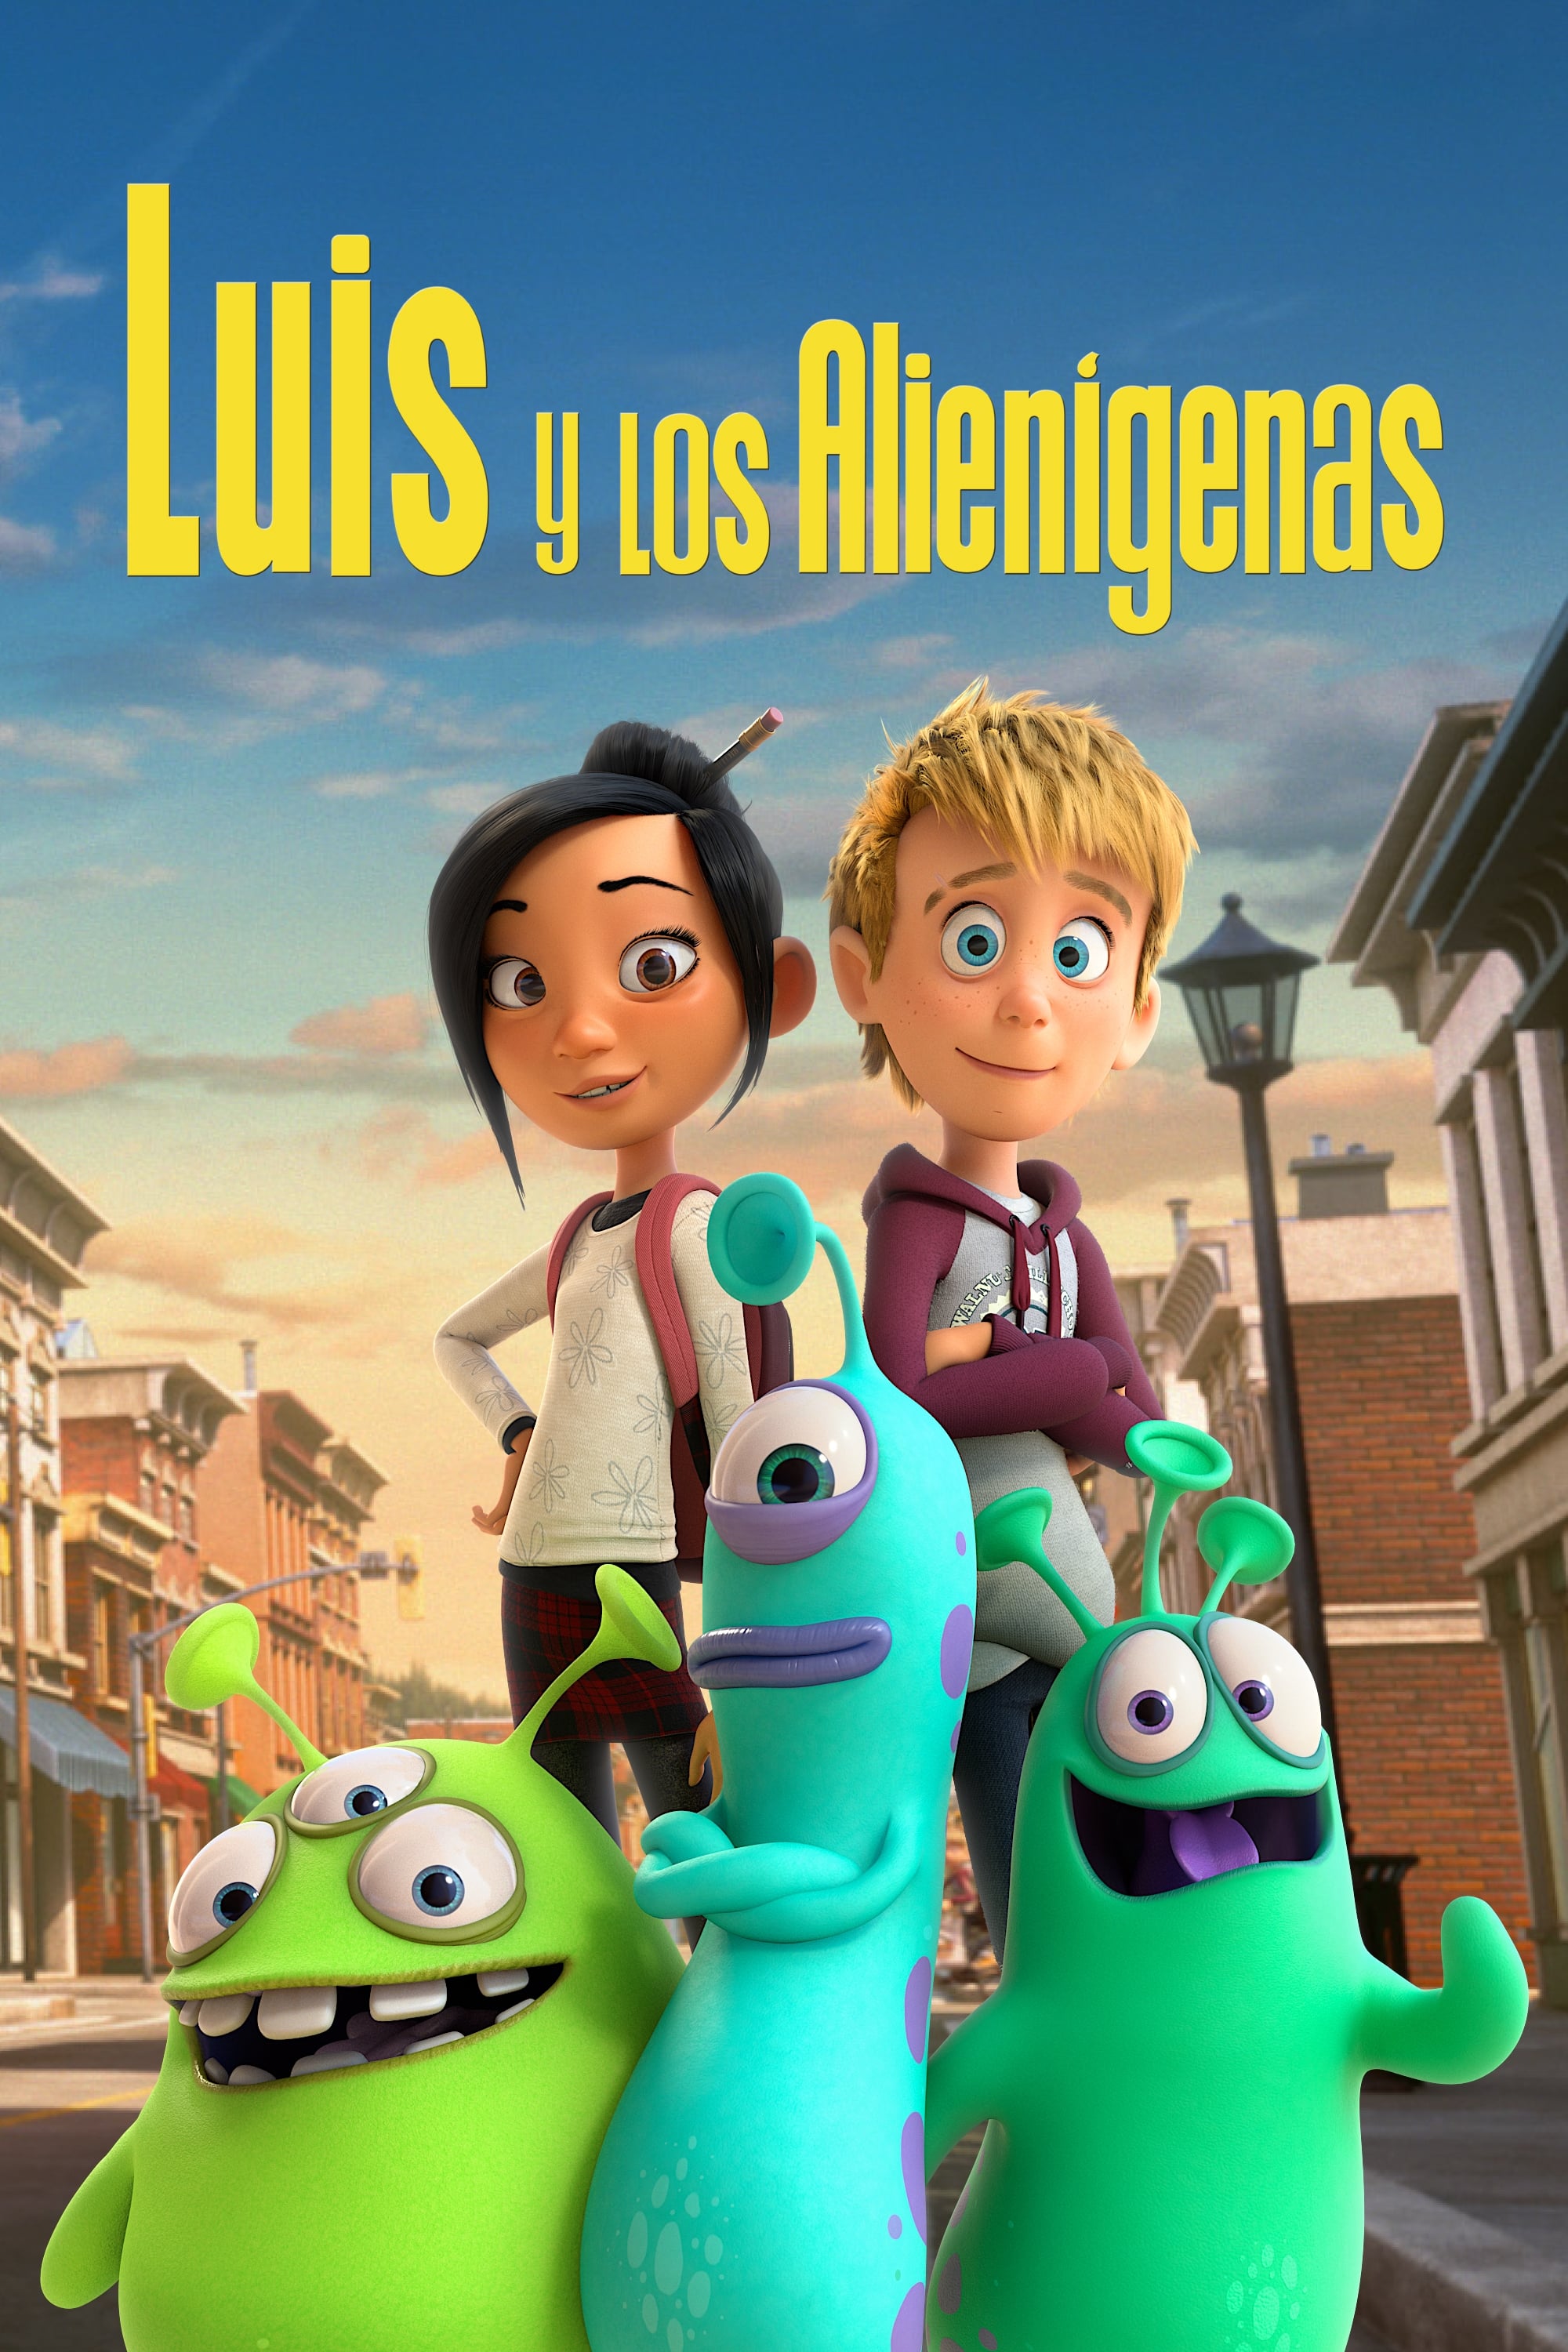 ver Luis y los alienígenas pelicula completa en español latino